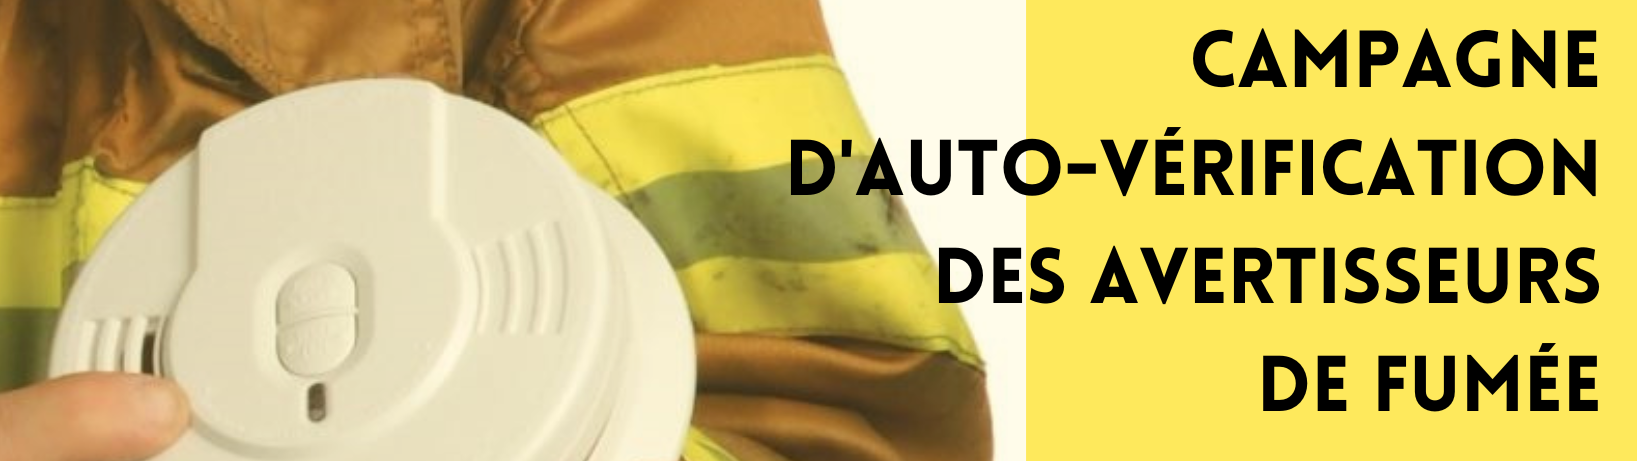 campagne-dauto-verification-des-avertisseurs-de-fumee-(3).png